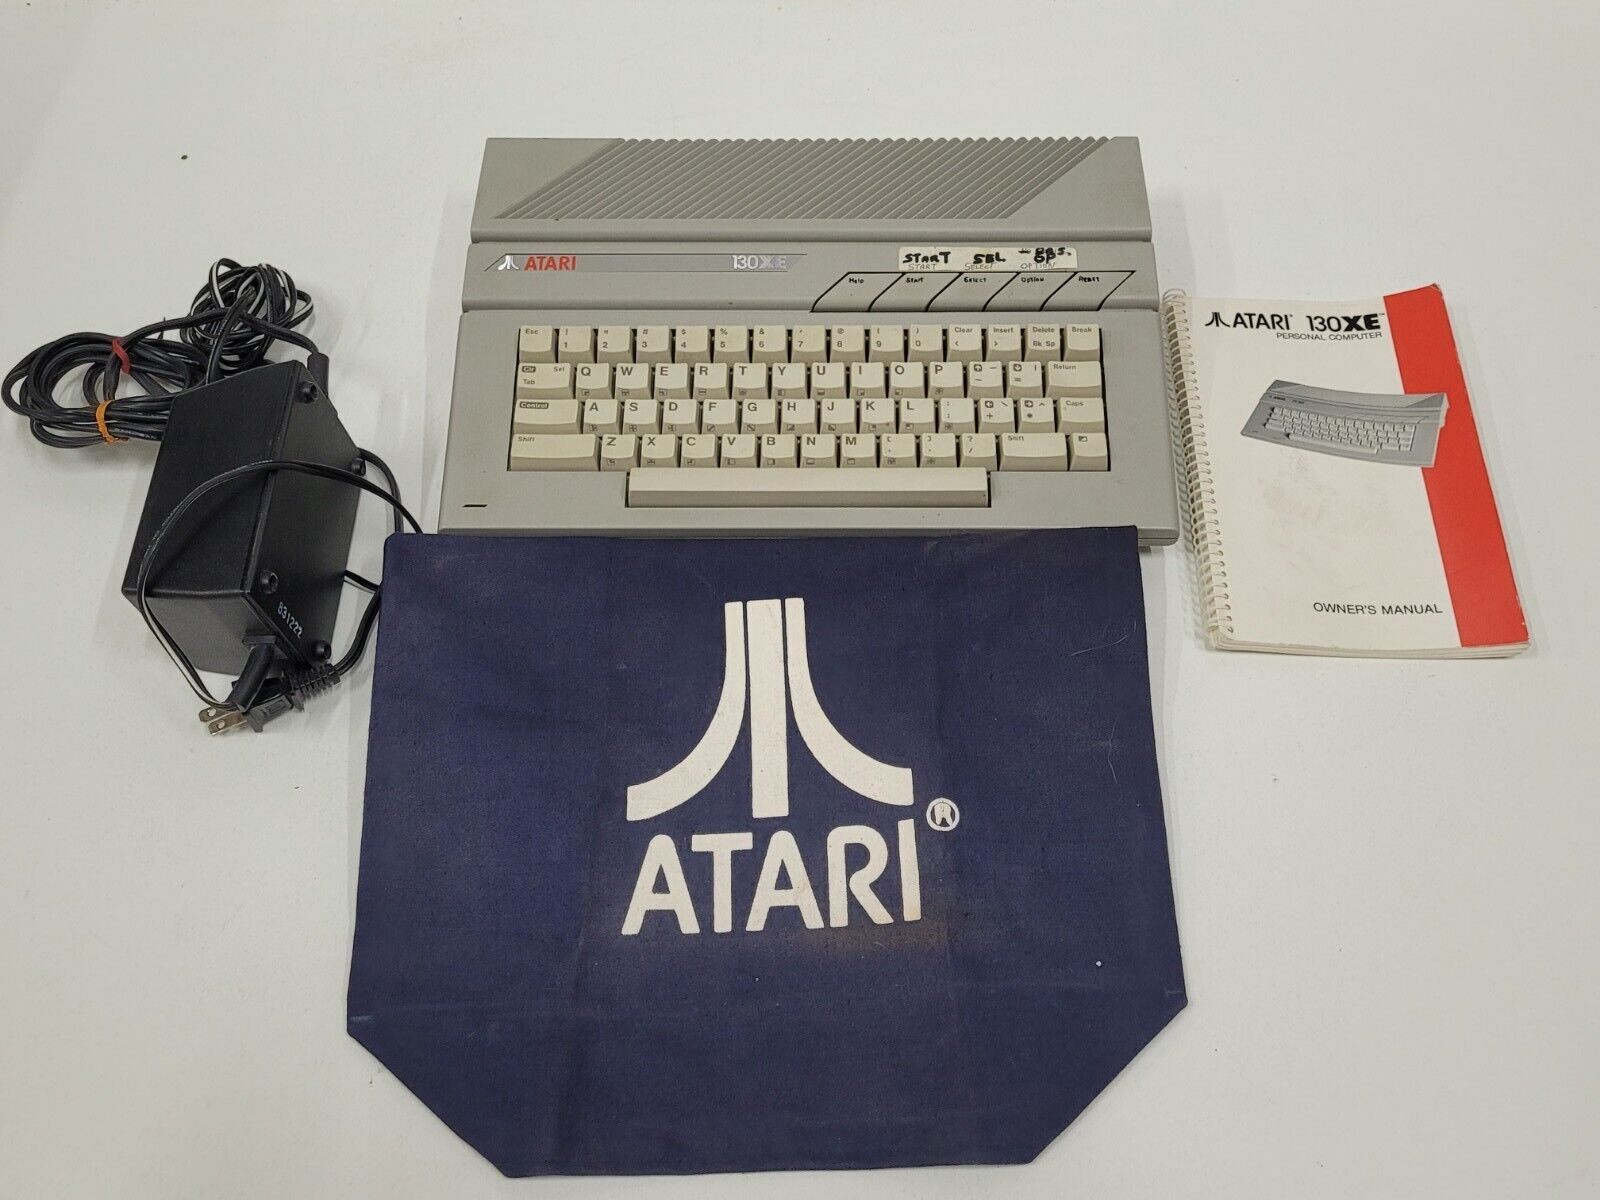 130XE Atari Personal Computer NTSC w/ Power Supply, Manual and Rare Atari Cover